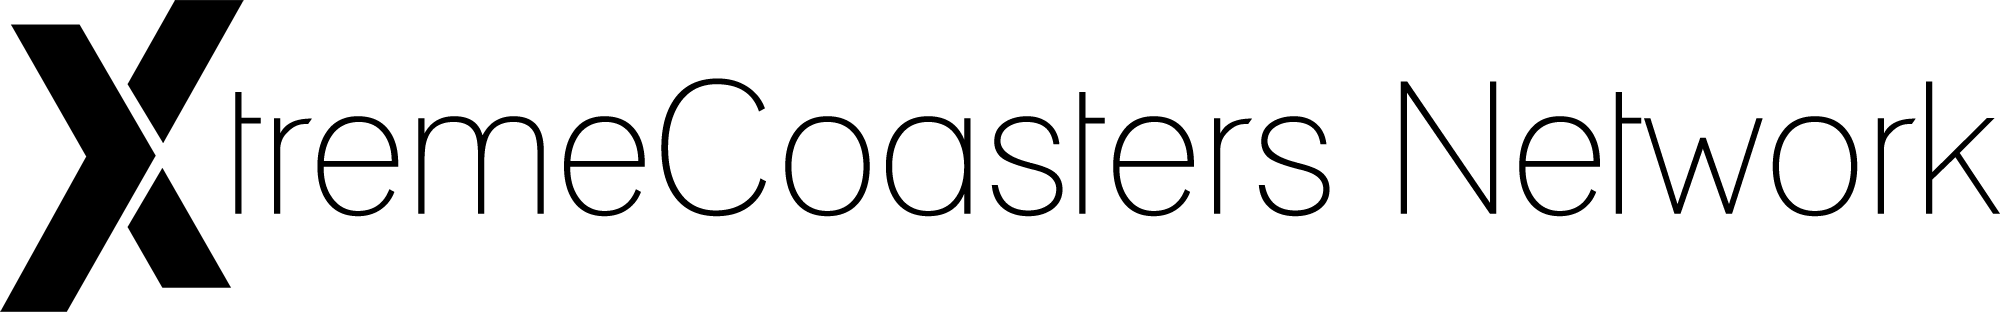 XtremeCoasters Network Logo